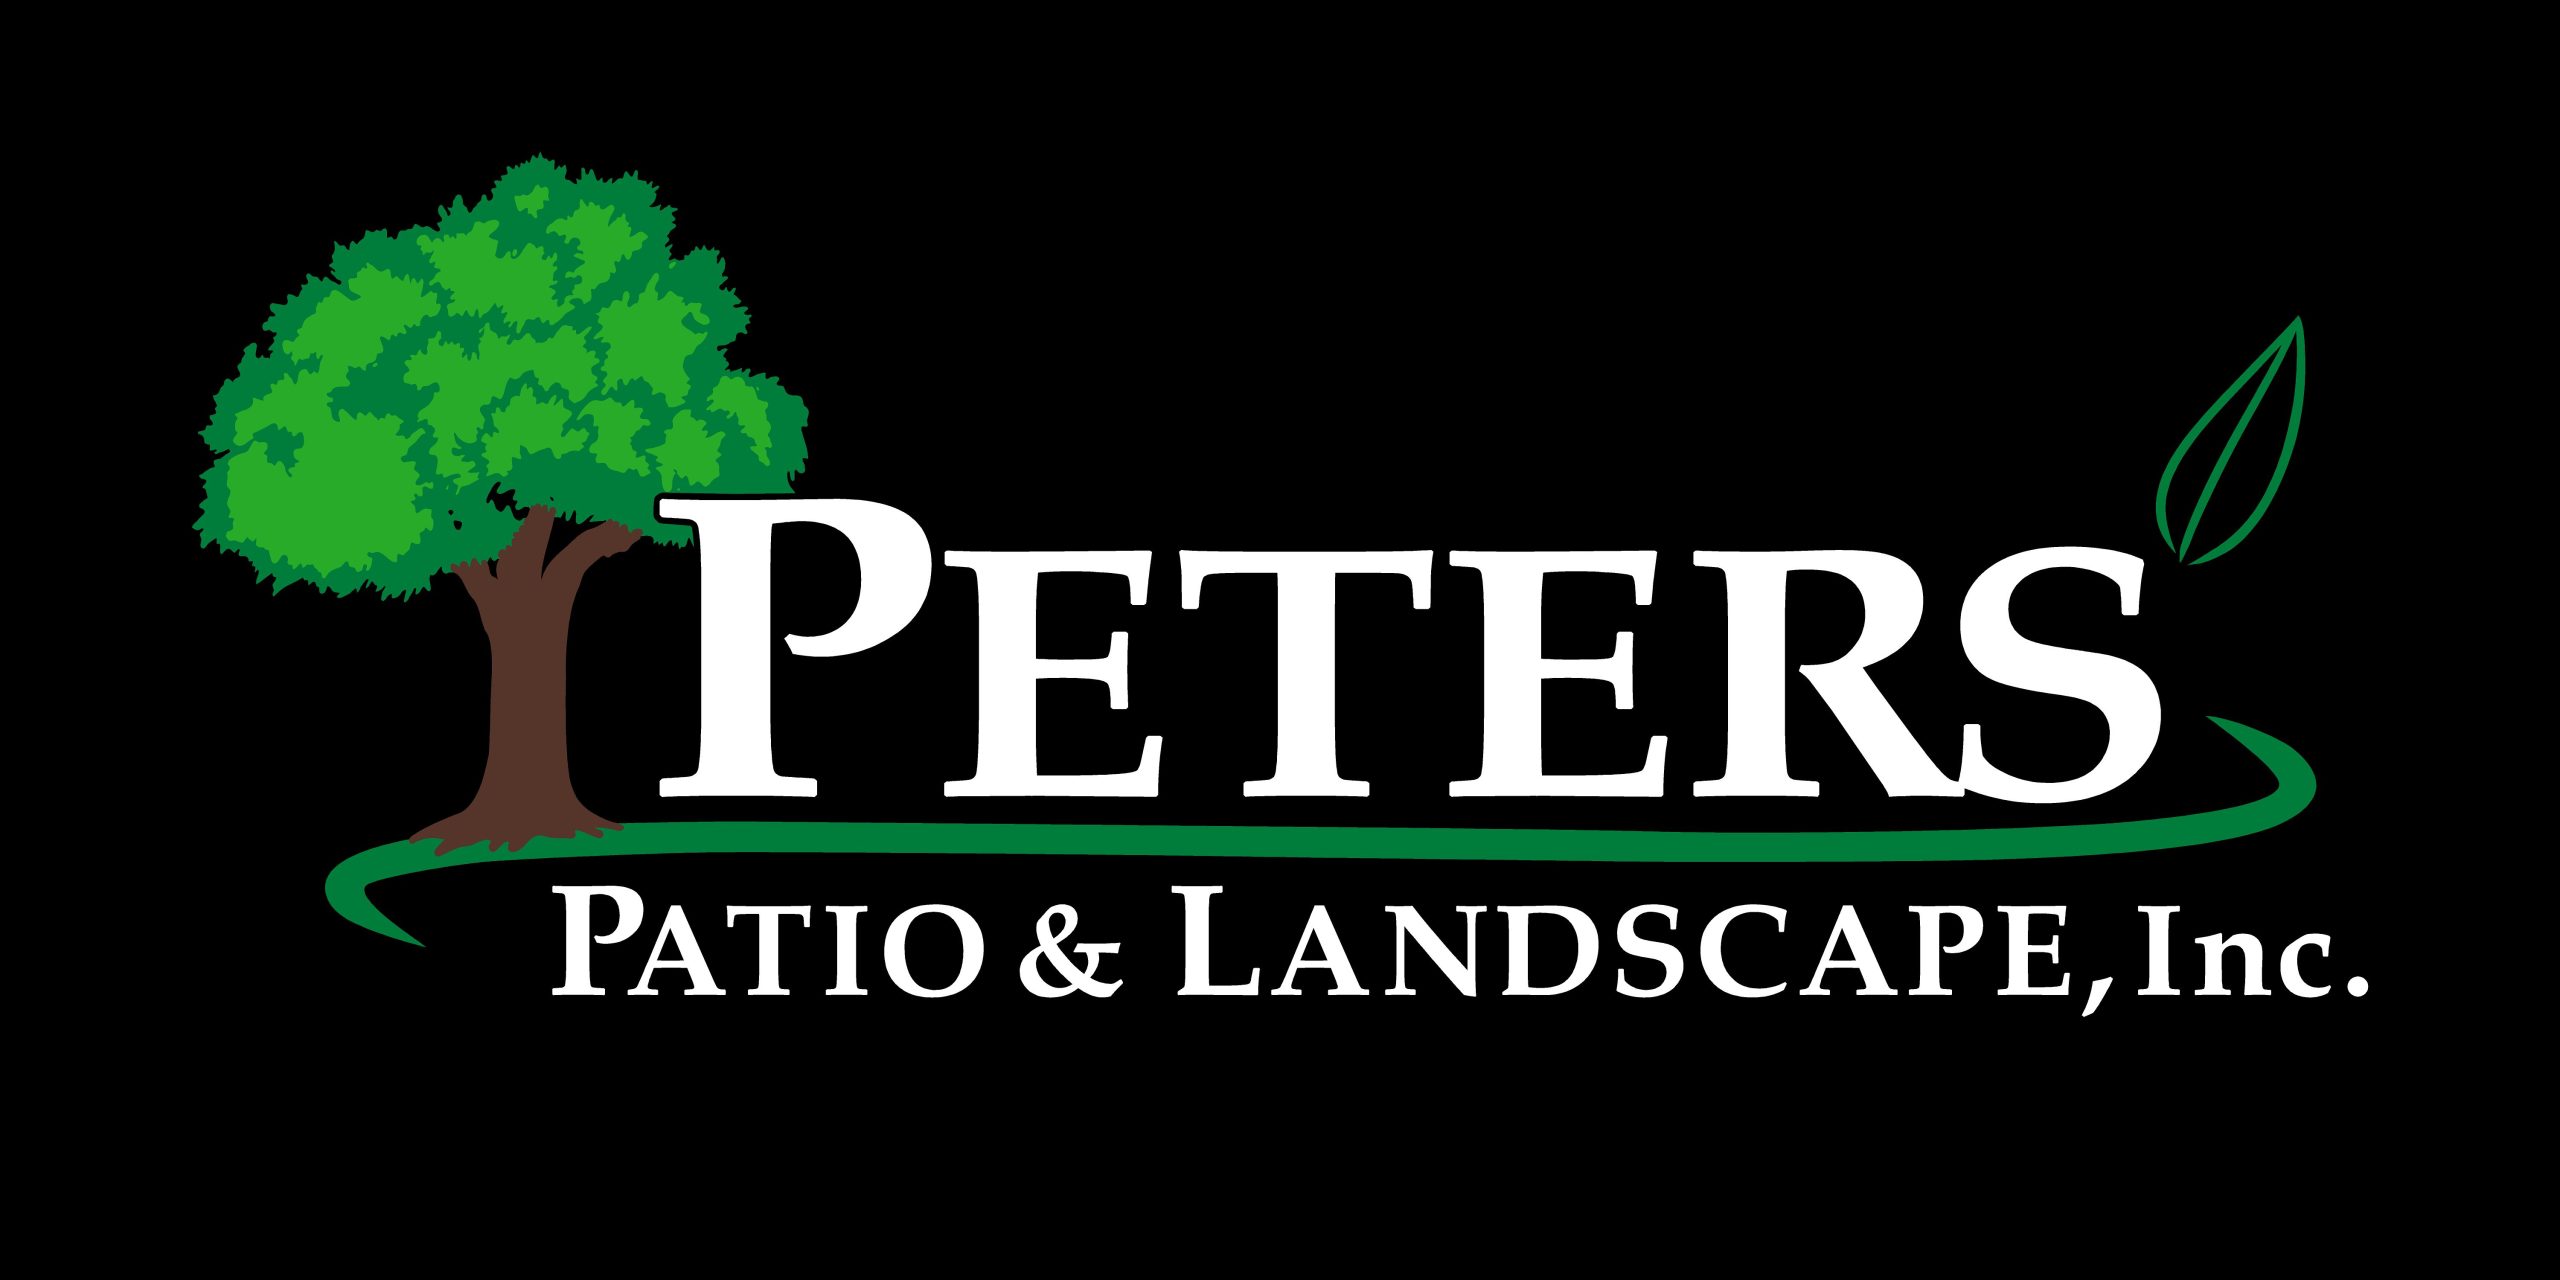 Peters' Patio & Landscape